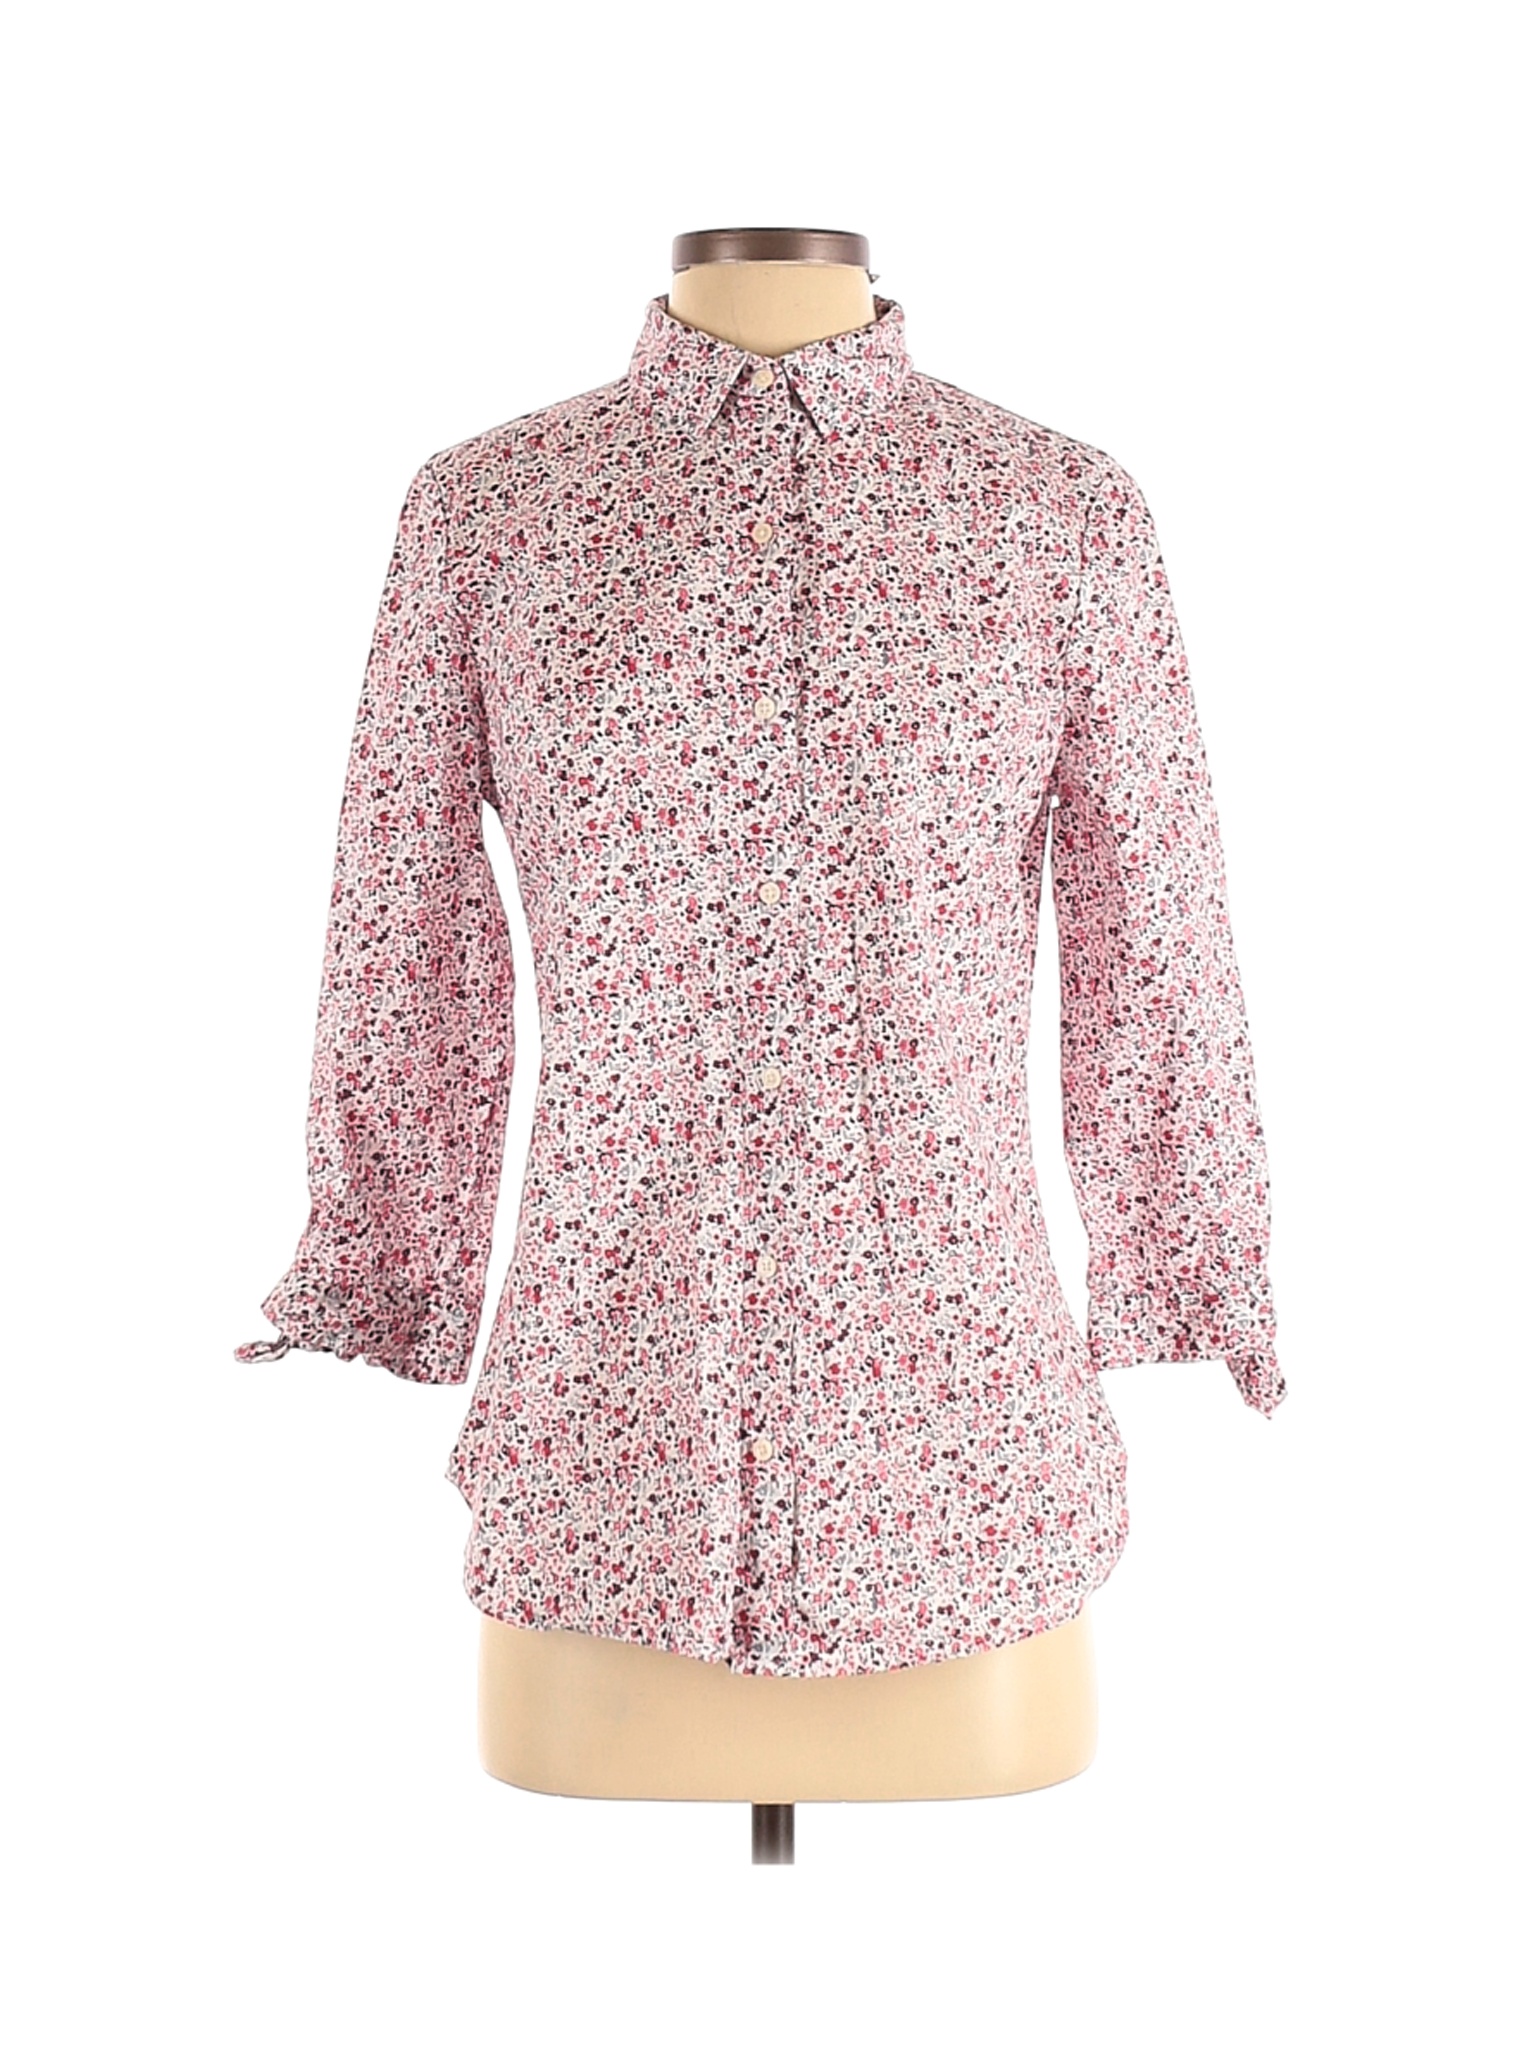 Banana Republic Women Pink Long Sleeve Button-Down Shirt S | eBay